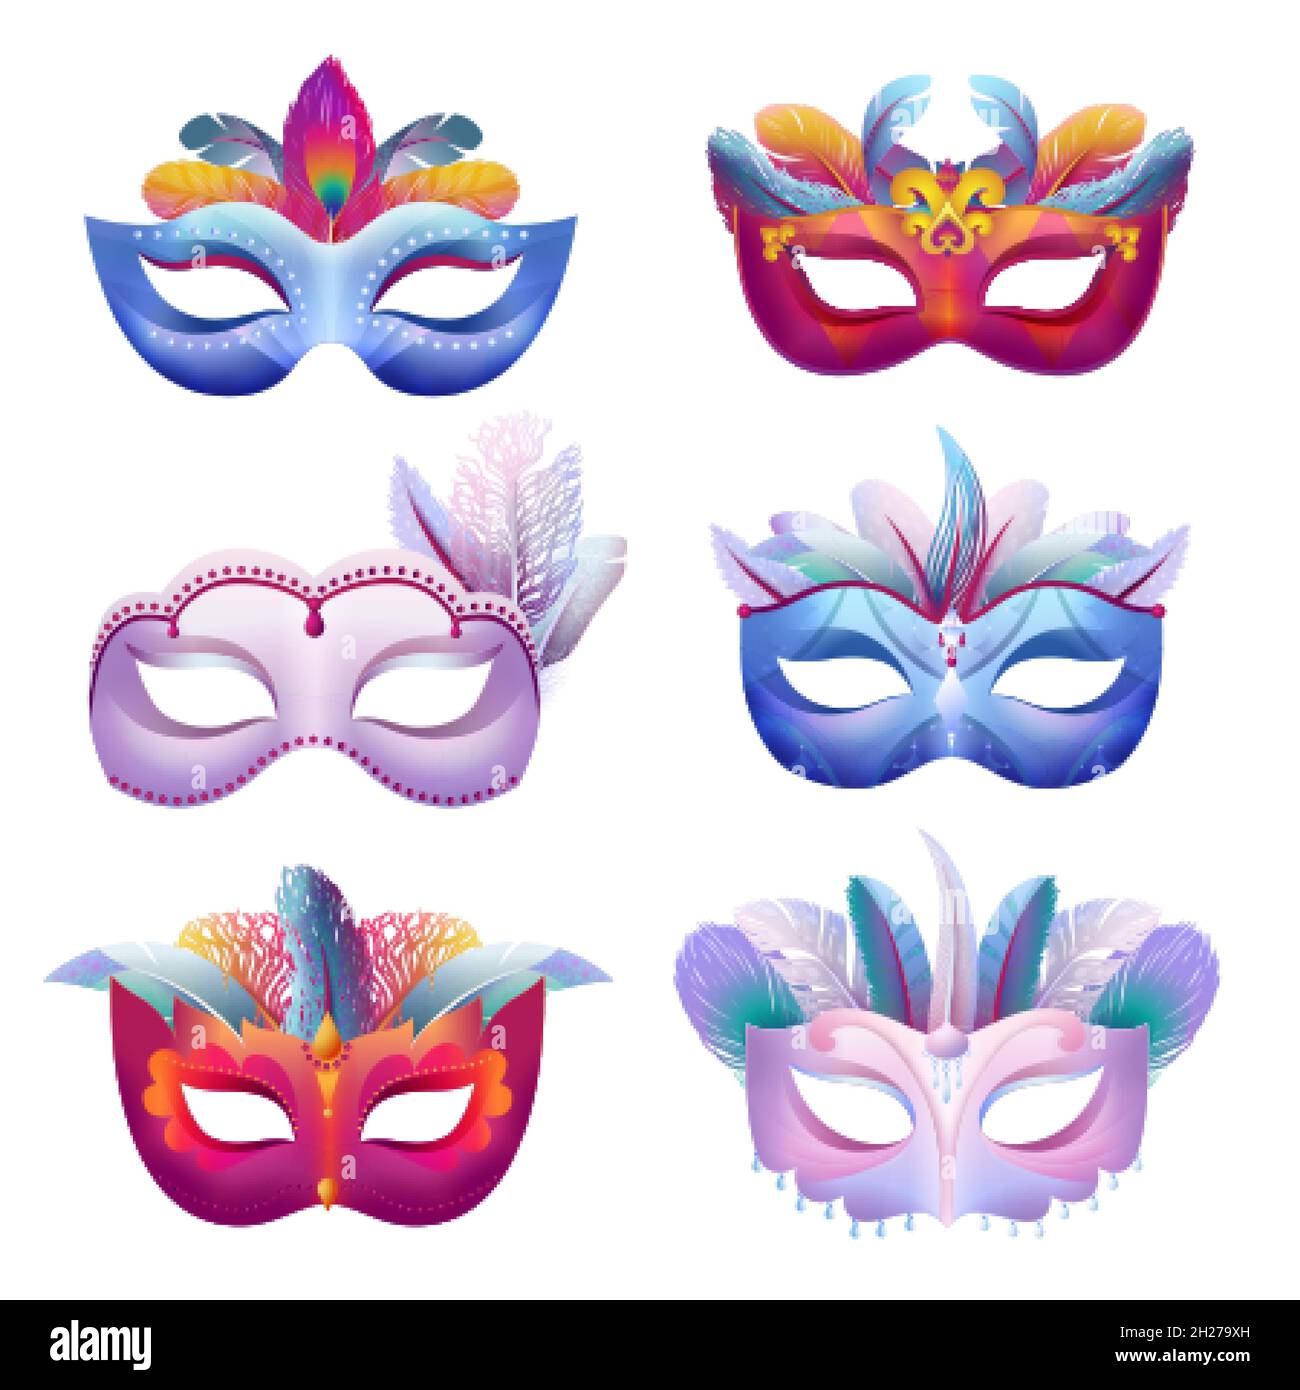 Maschera di carnevale con decorazionibellissima con disegno per carnevale  brasile buon carnevale brasile sud america carnevale ai